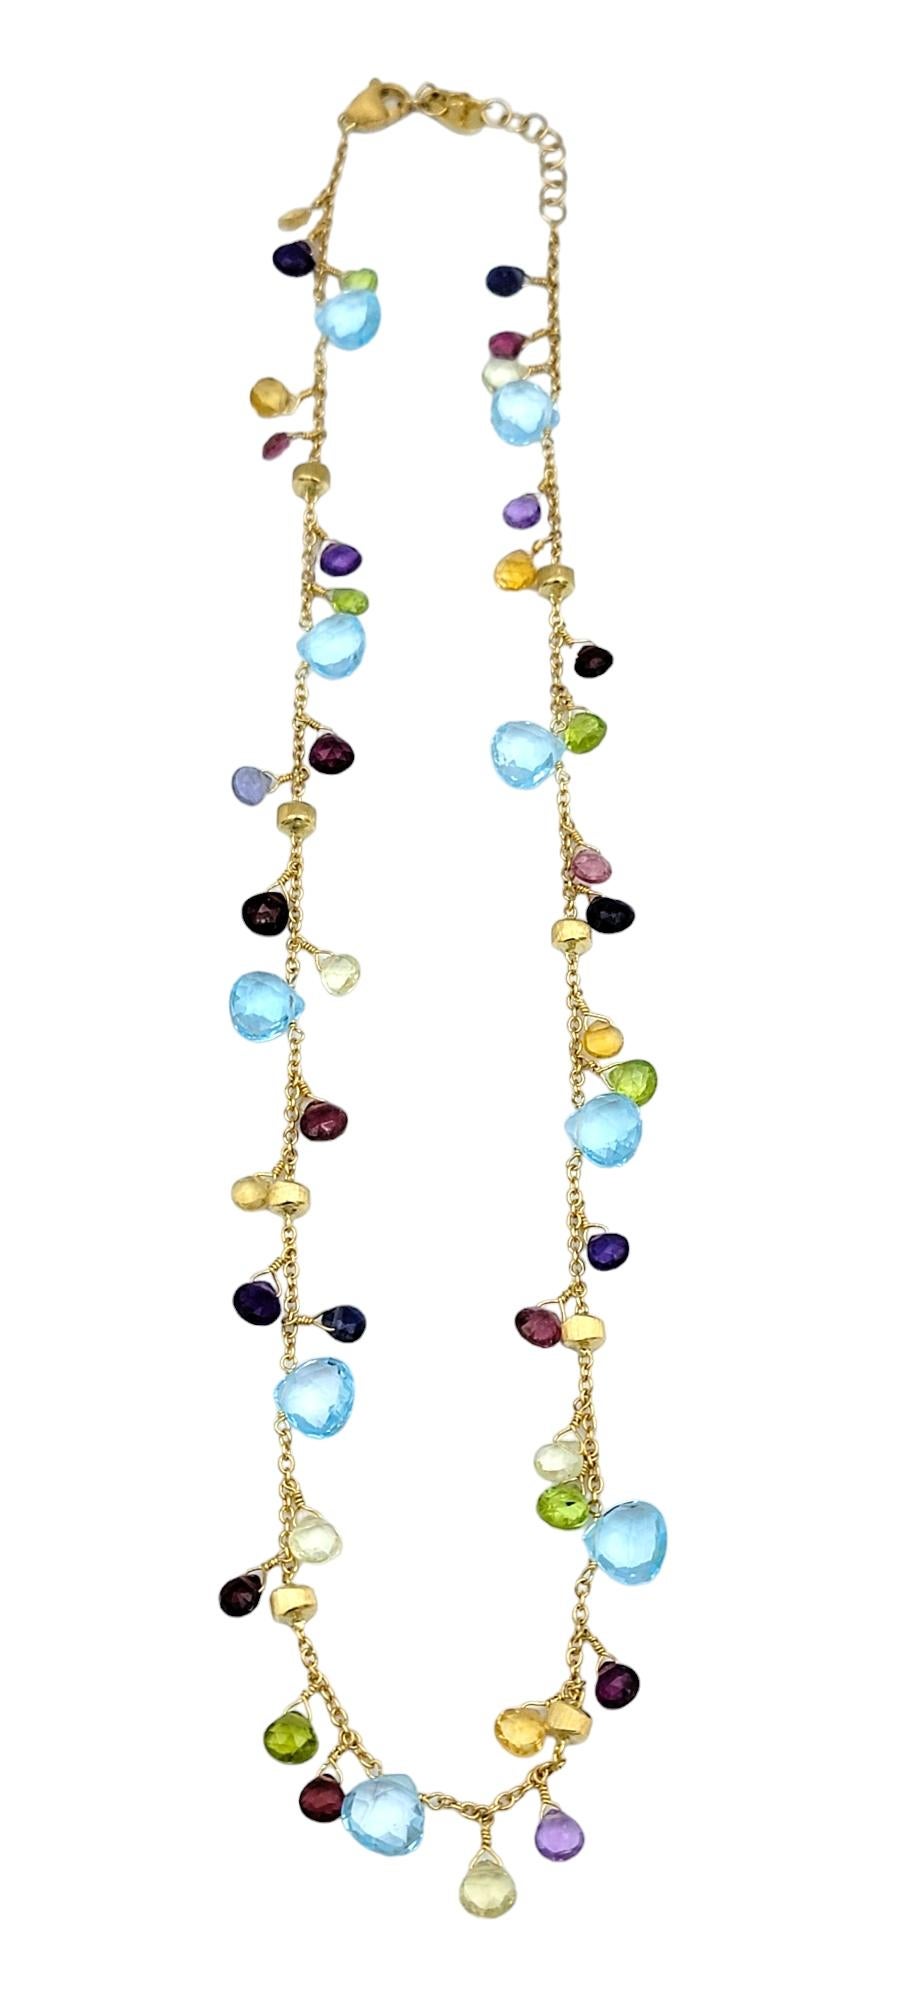 Ce magnifique collier de pierres précieuses multicolores Marco Bicego Paradise présente des pierres éclatantes taillées en briolette et serties dans de l'or jaune 18 carats. Chaque pierre, dont les teintes vont des bleus et verts profonds aux roses